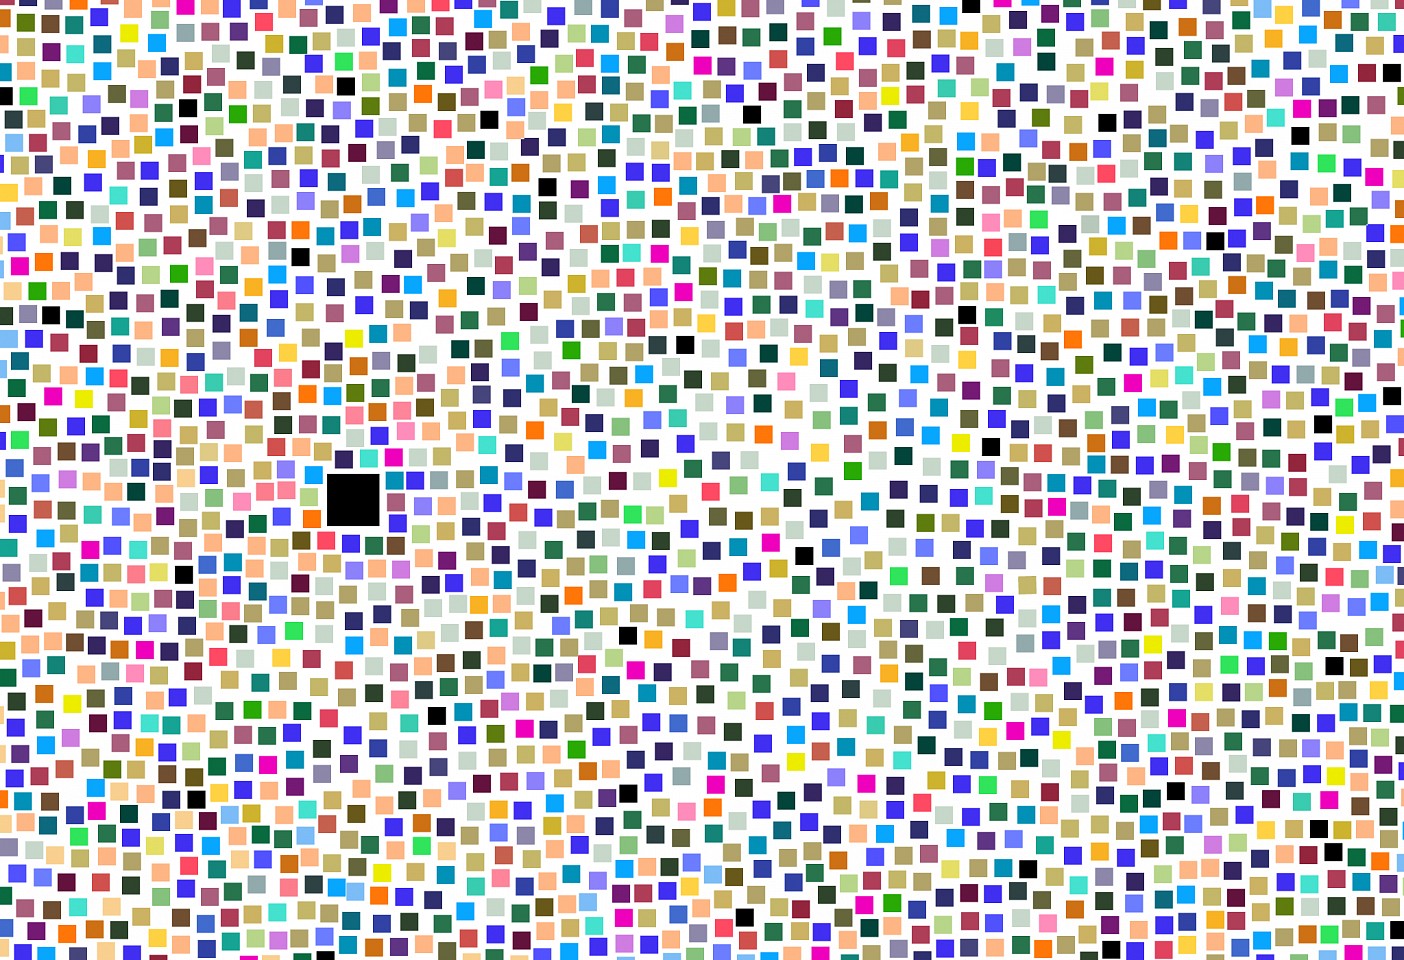 Dane Albert, Color Blocks #42, 2023
Acrylic on canvas (Concept), 48 x 72 in. (121.9 x 182.9 cm)
Series of colored blocks in multiple configurations
DA.cb-2023-042